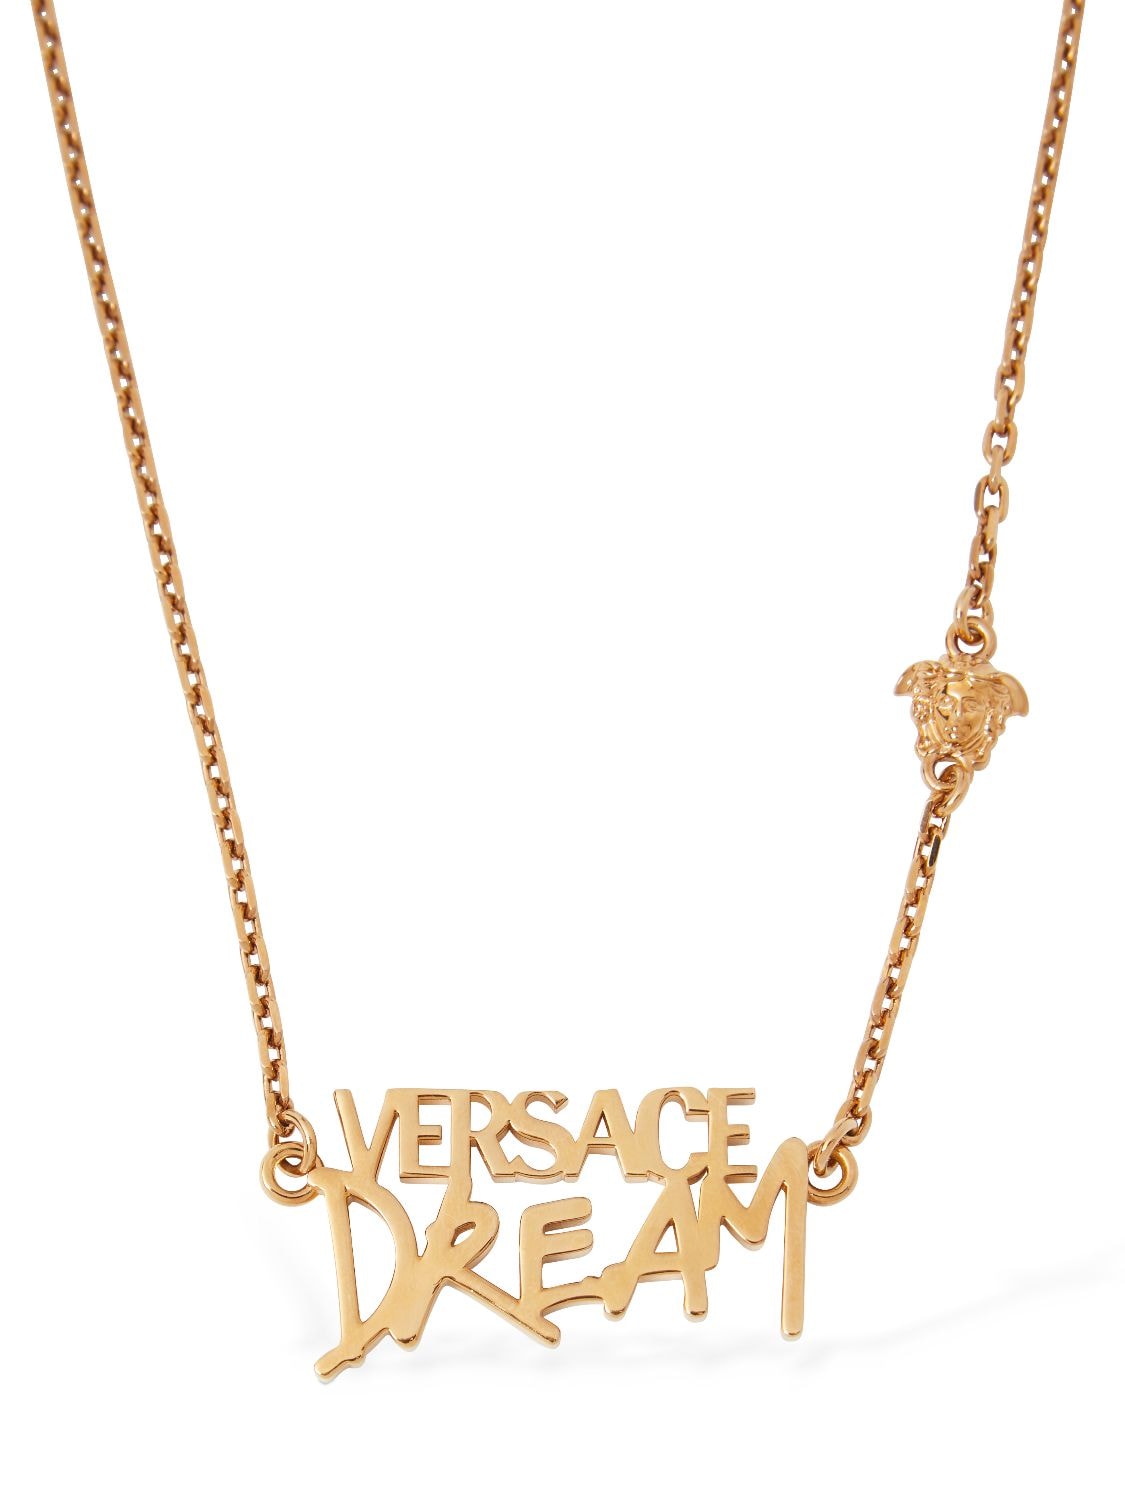 Versace Versace dream necklace Luisaviaroma